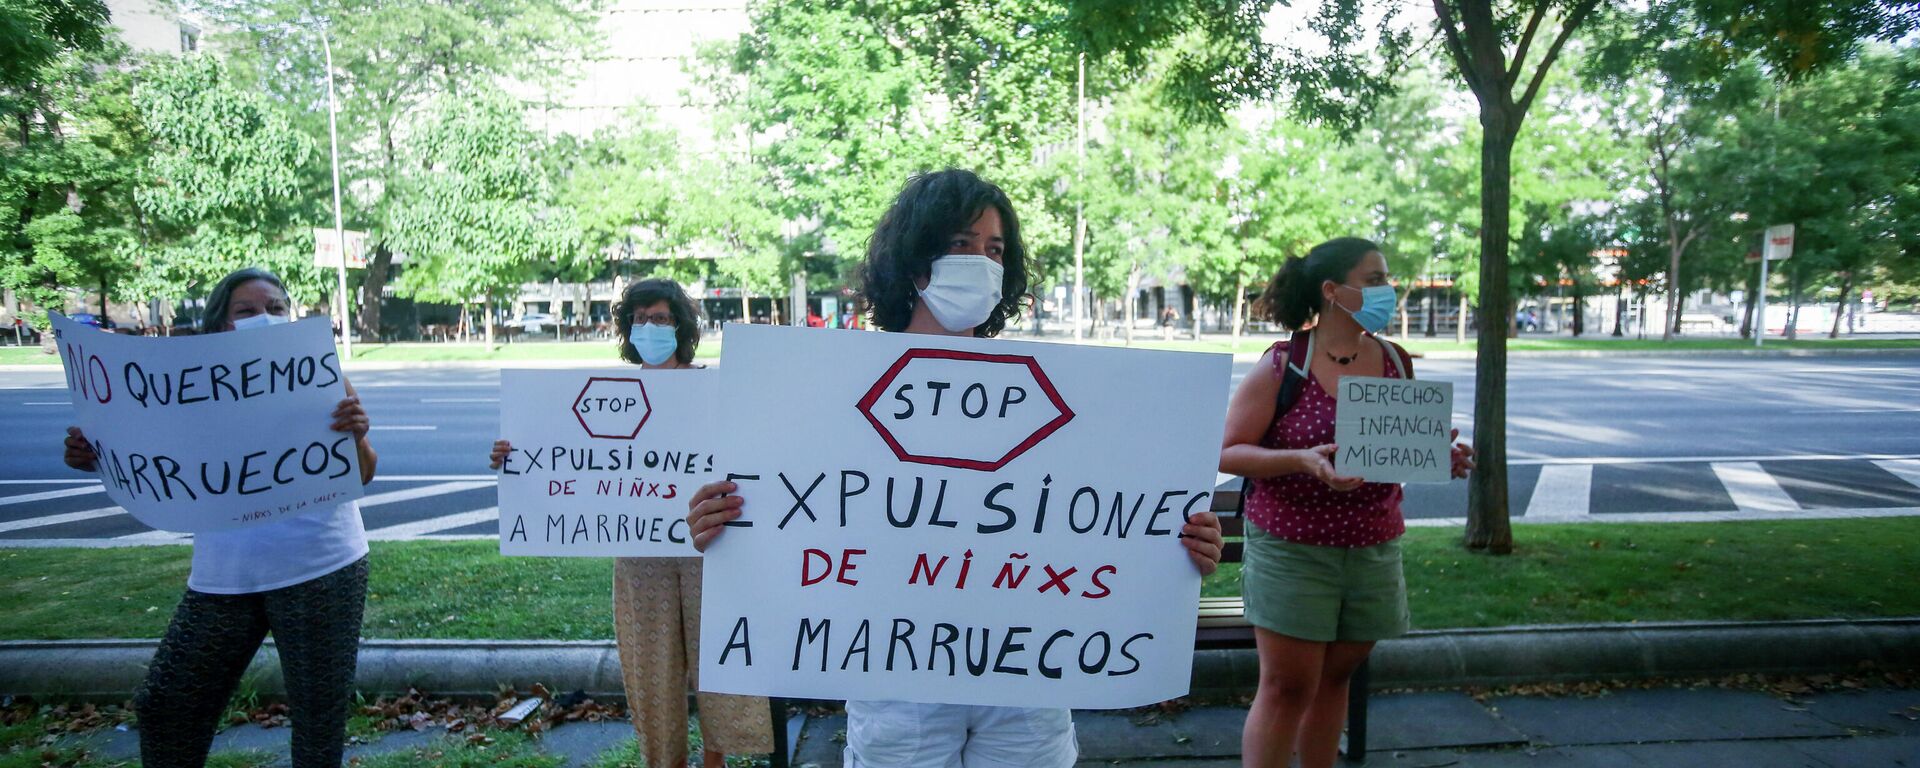 Participante lleva un cartel que dice 'Stop expulsiones de niñxs a Marruecos' durante una manifestación contra la deportación de los menores migrantes marroquíes - Sputnik Mundo, 1920, 16.08.2021